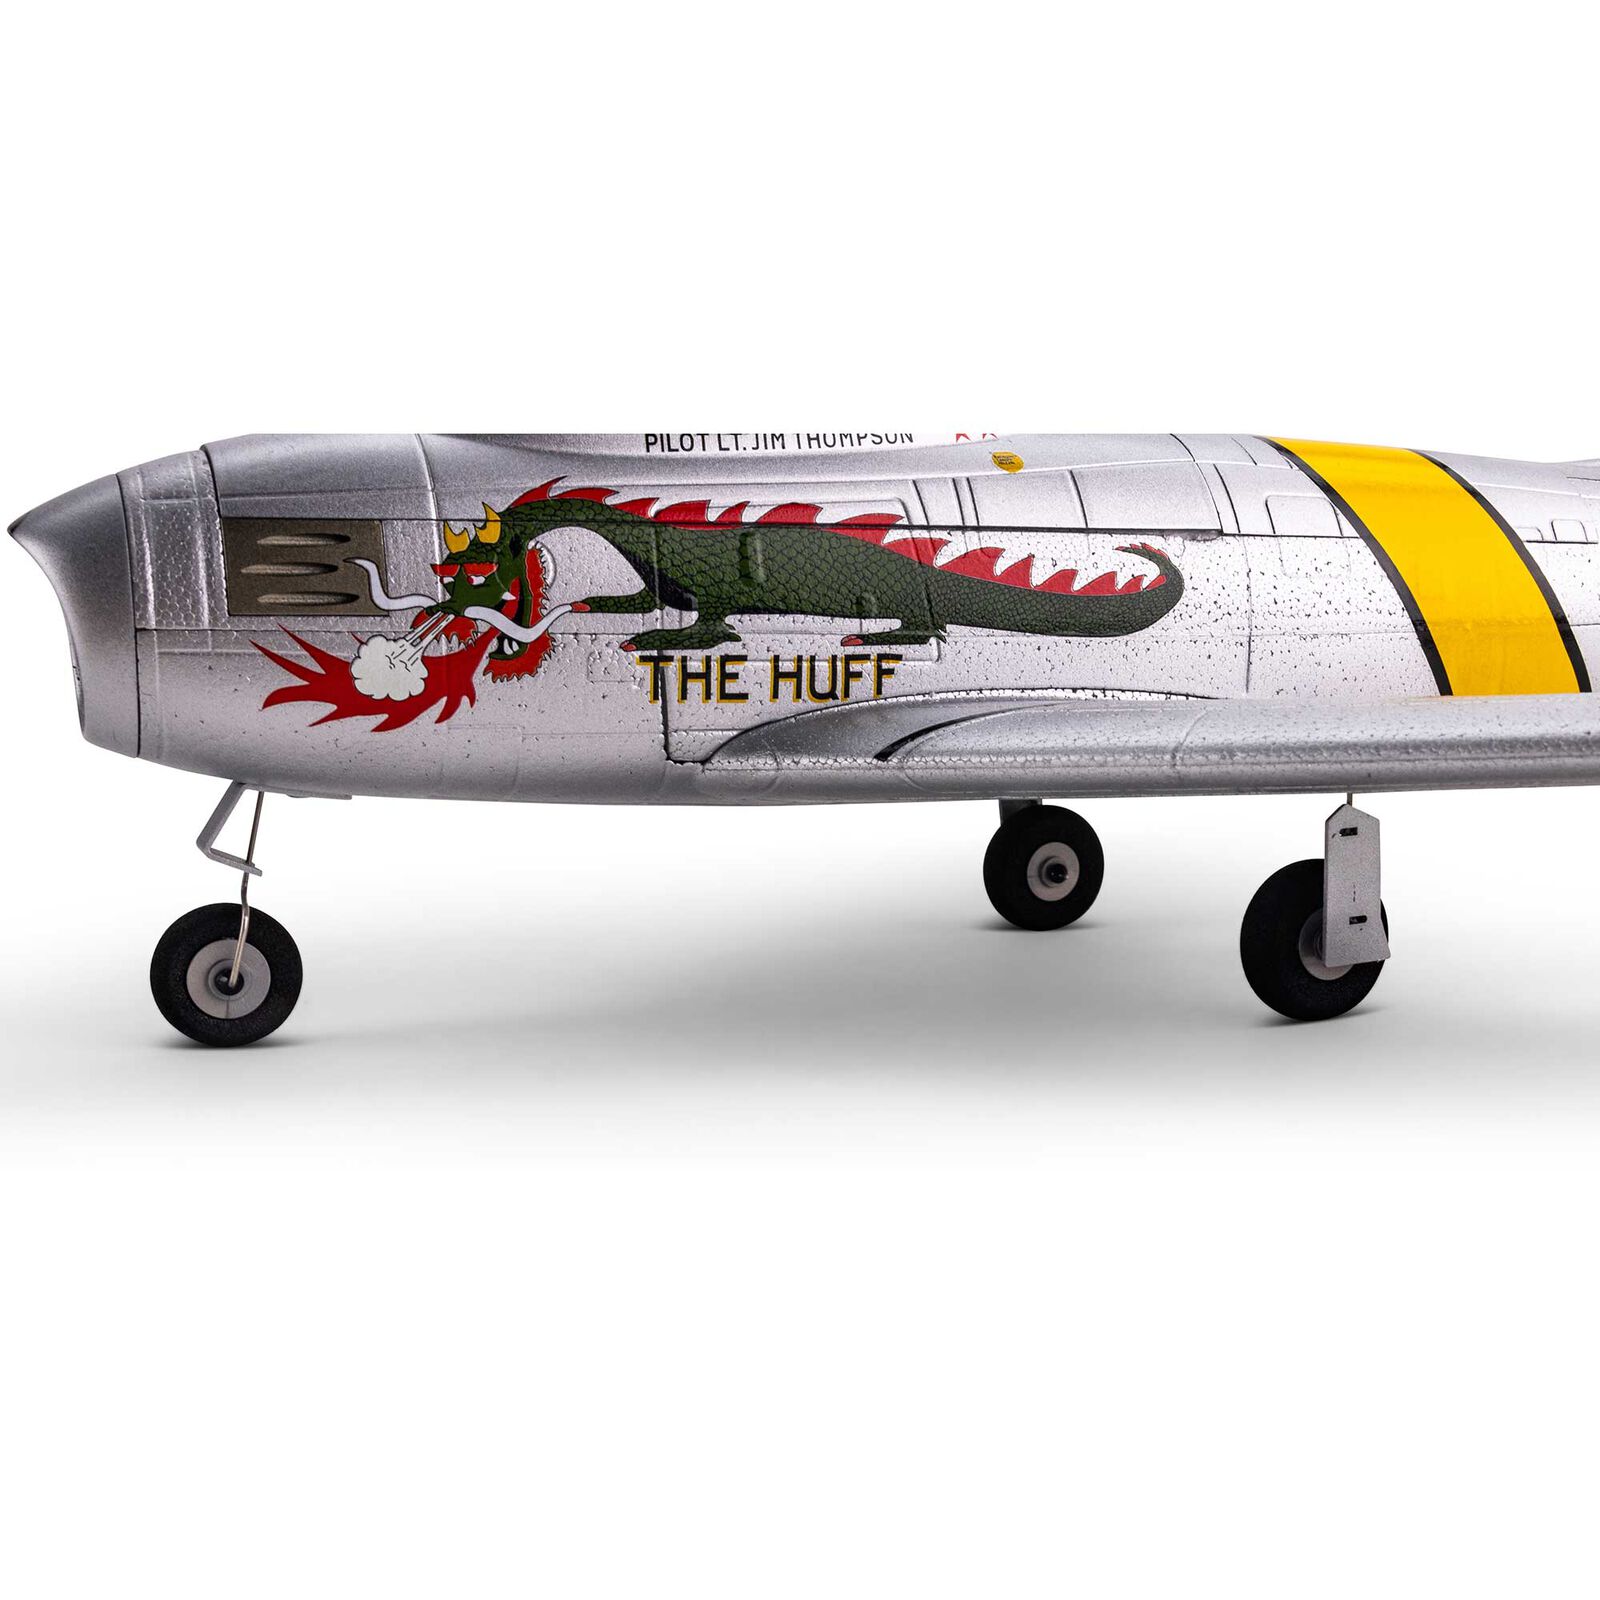 UMX F-86 Sabre E-flite